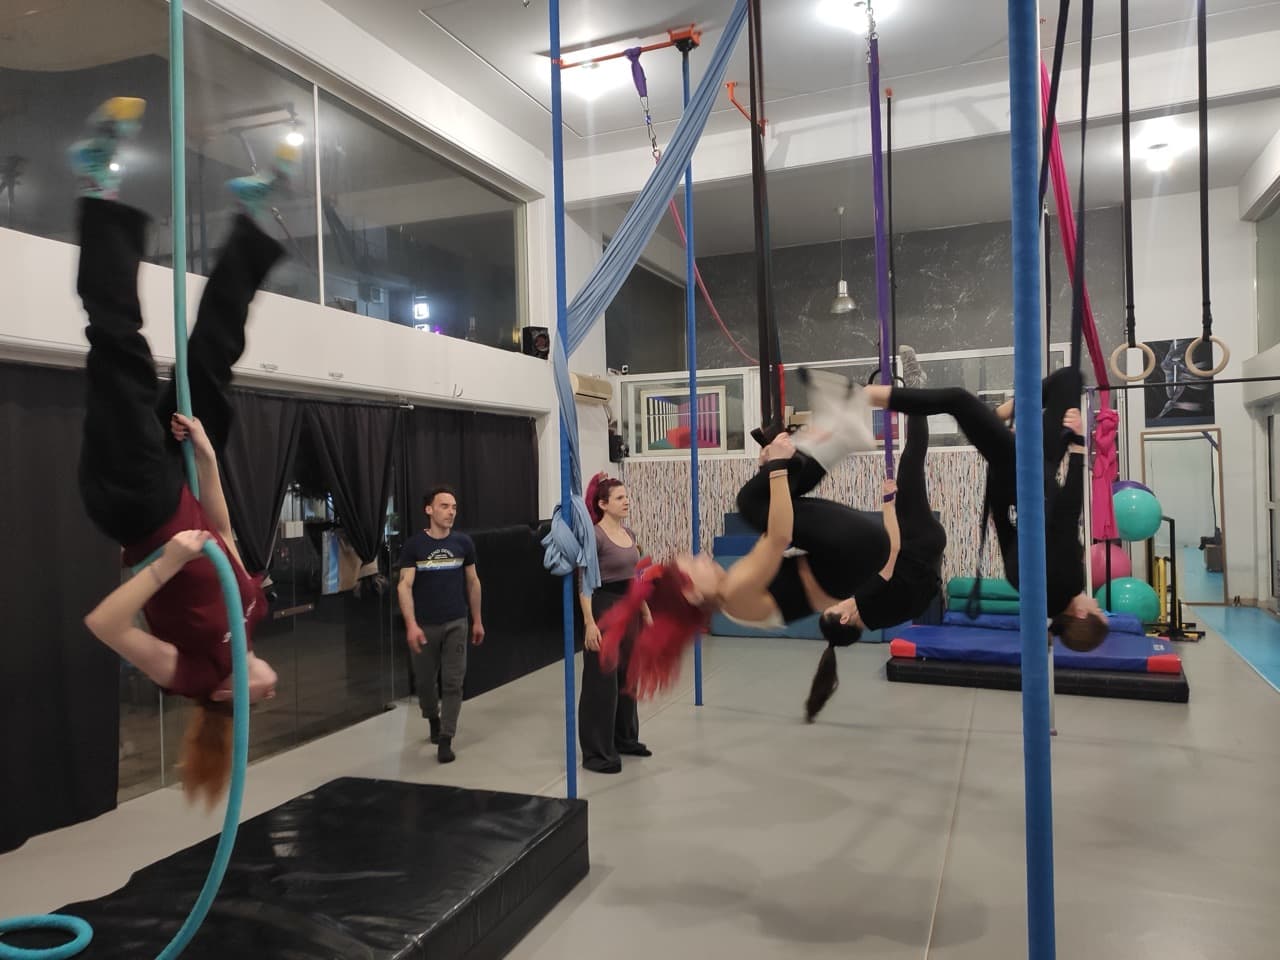 kyvos-training-athens-aerial-yoga-sportshunter-12